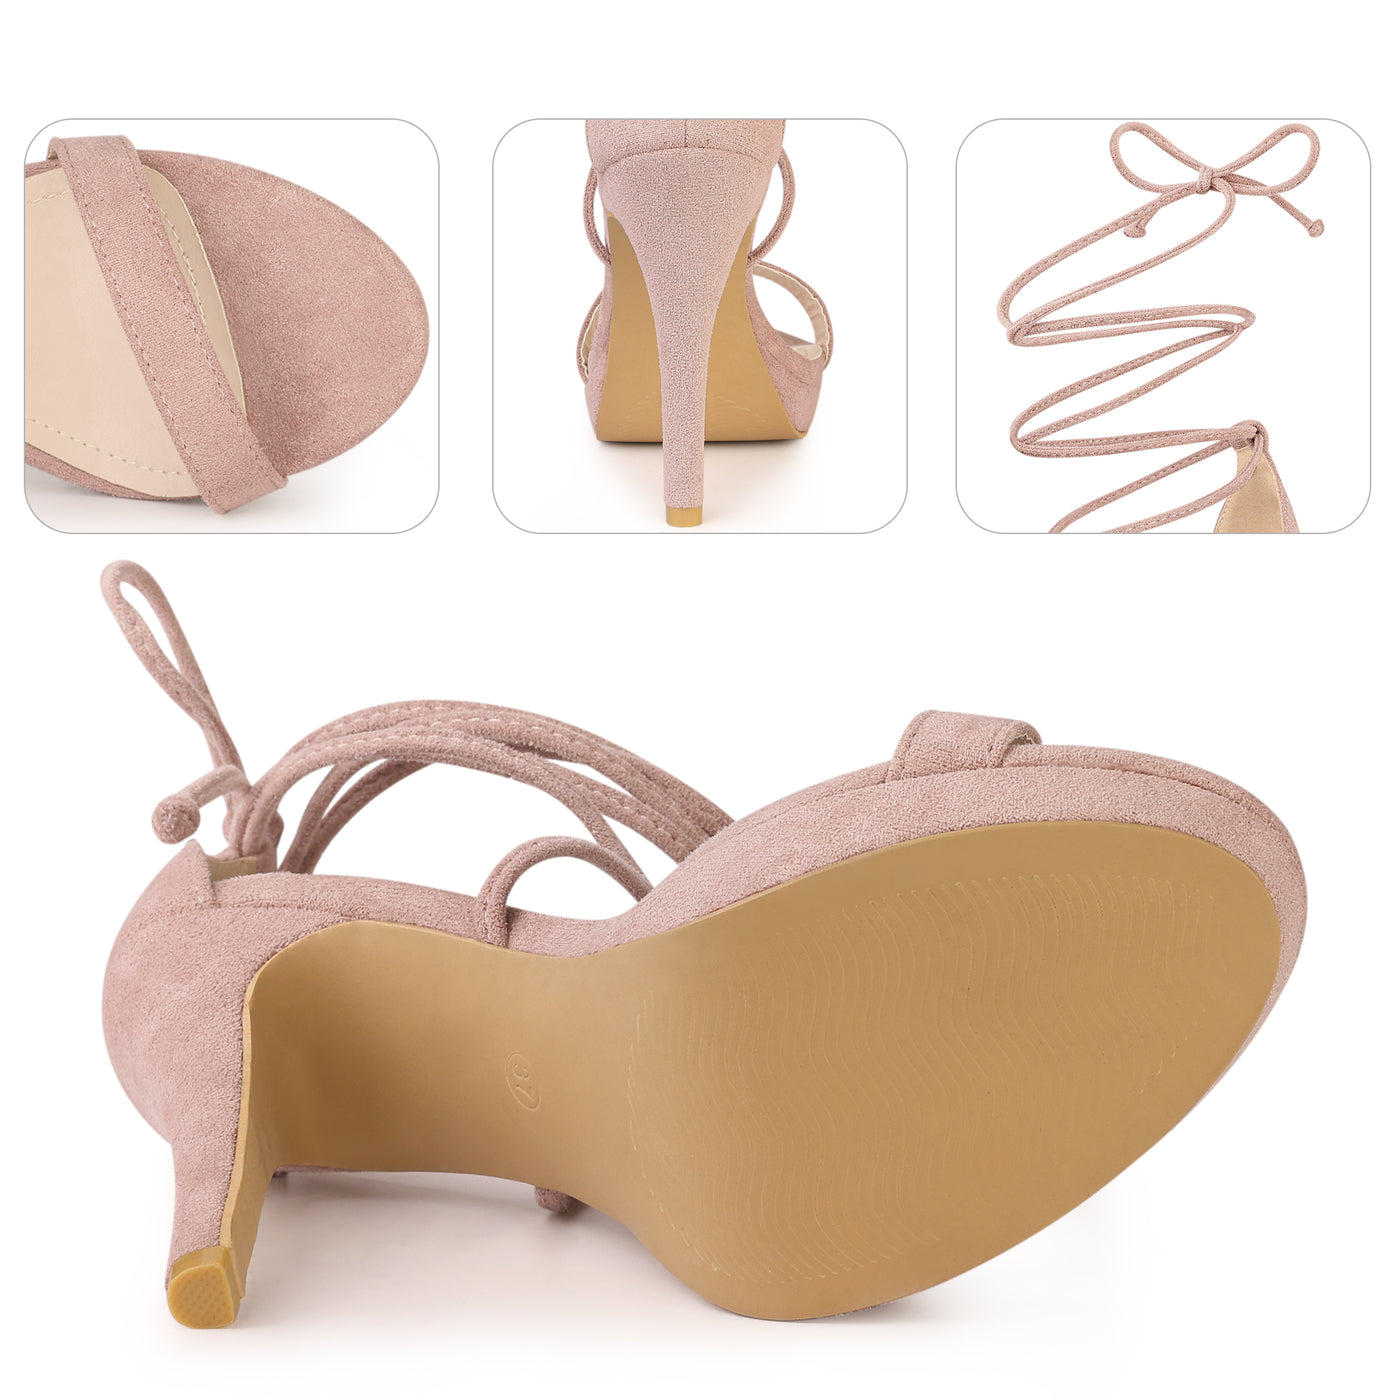 Bublédon Platform Stiletto Heels Lace Up Sandals for Women